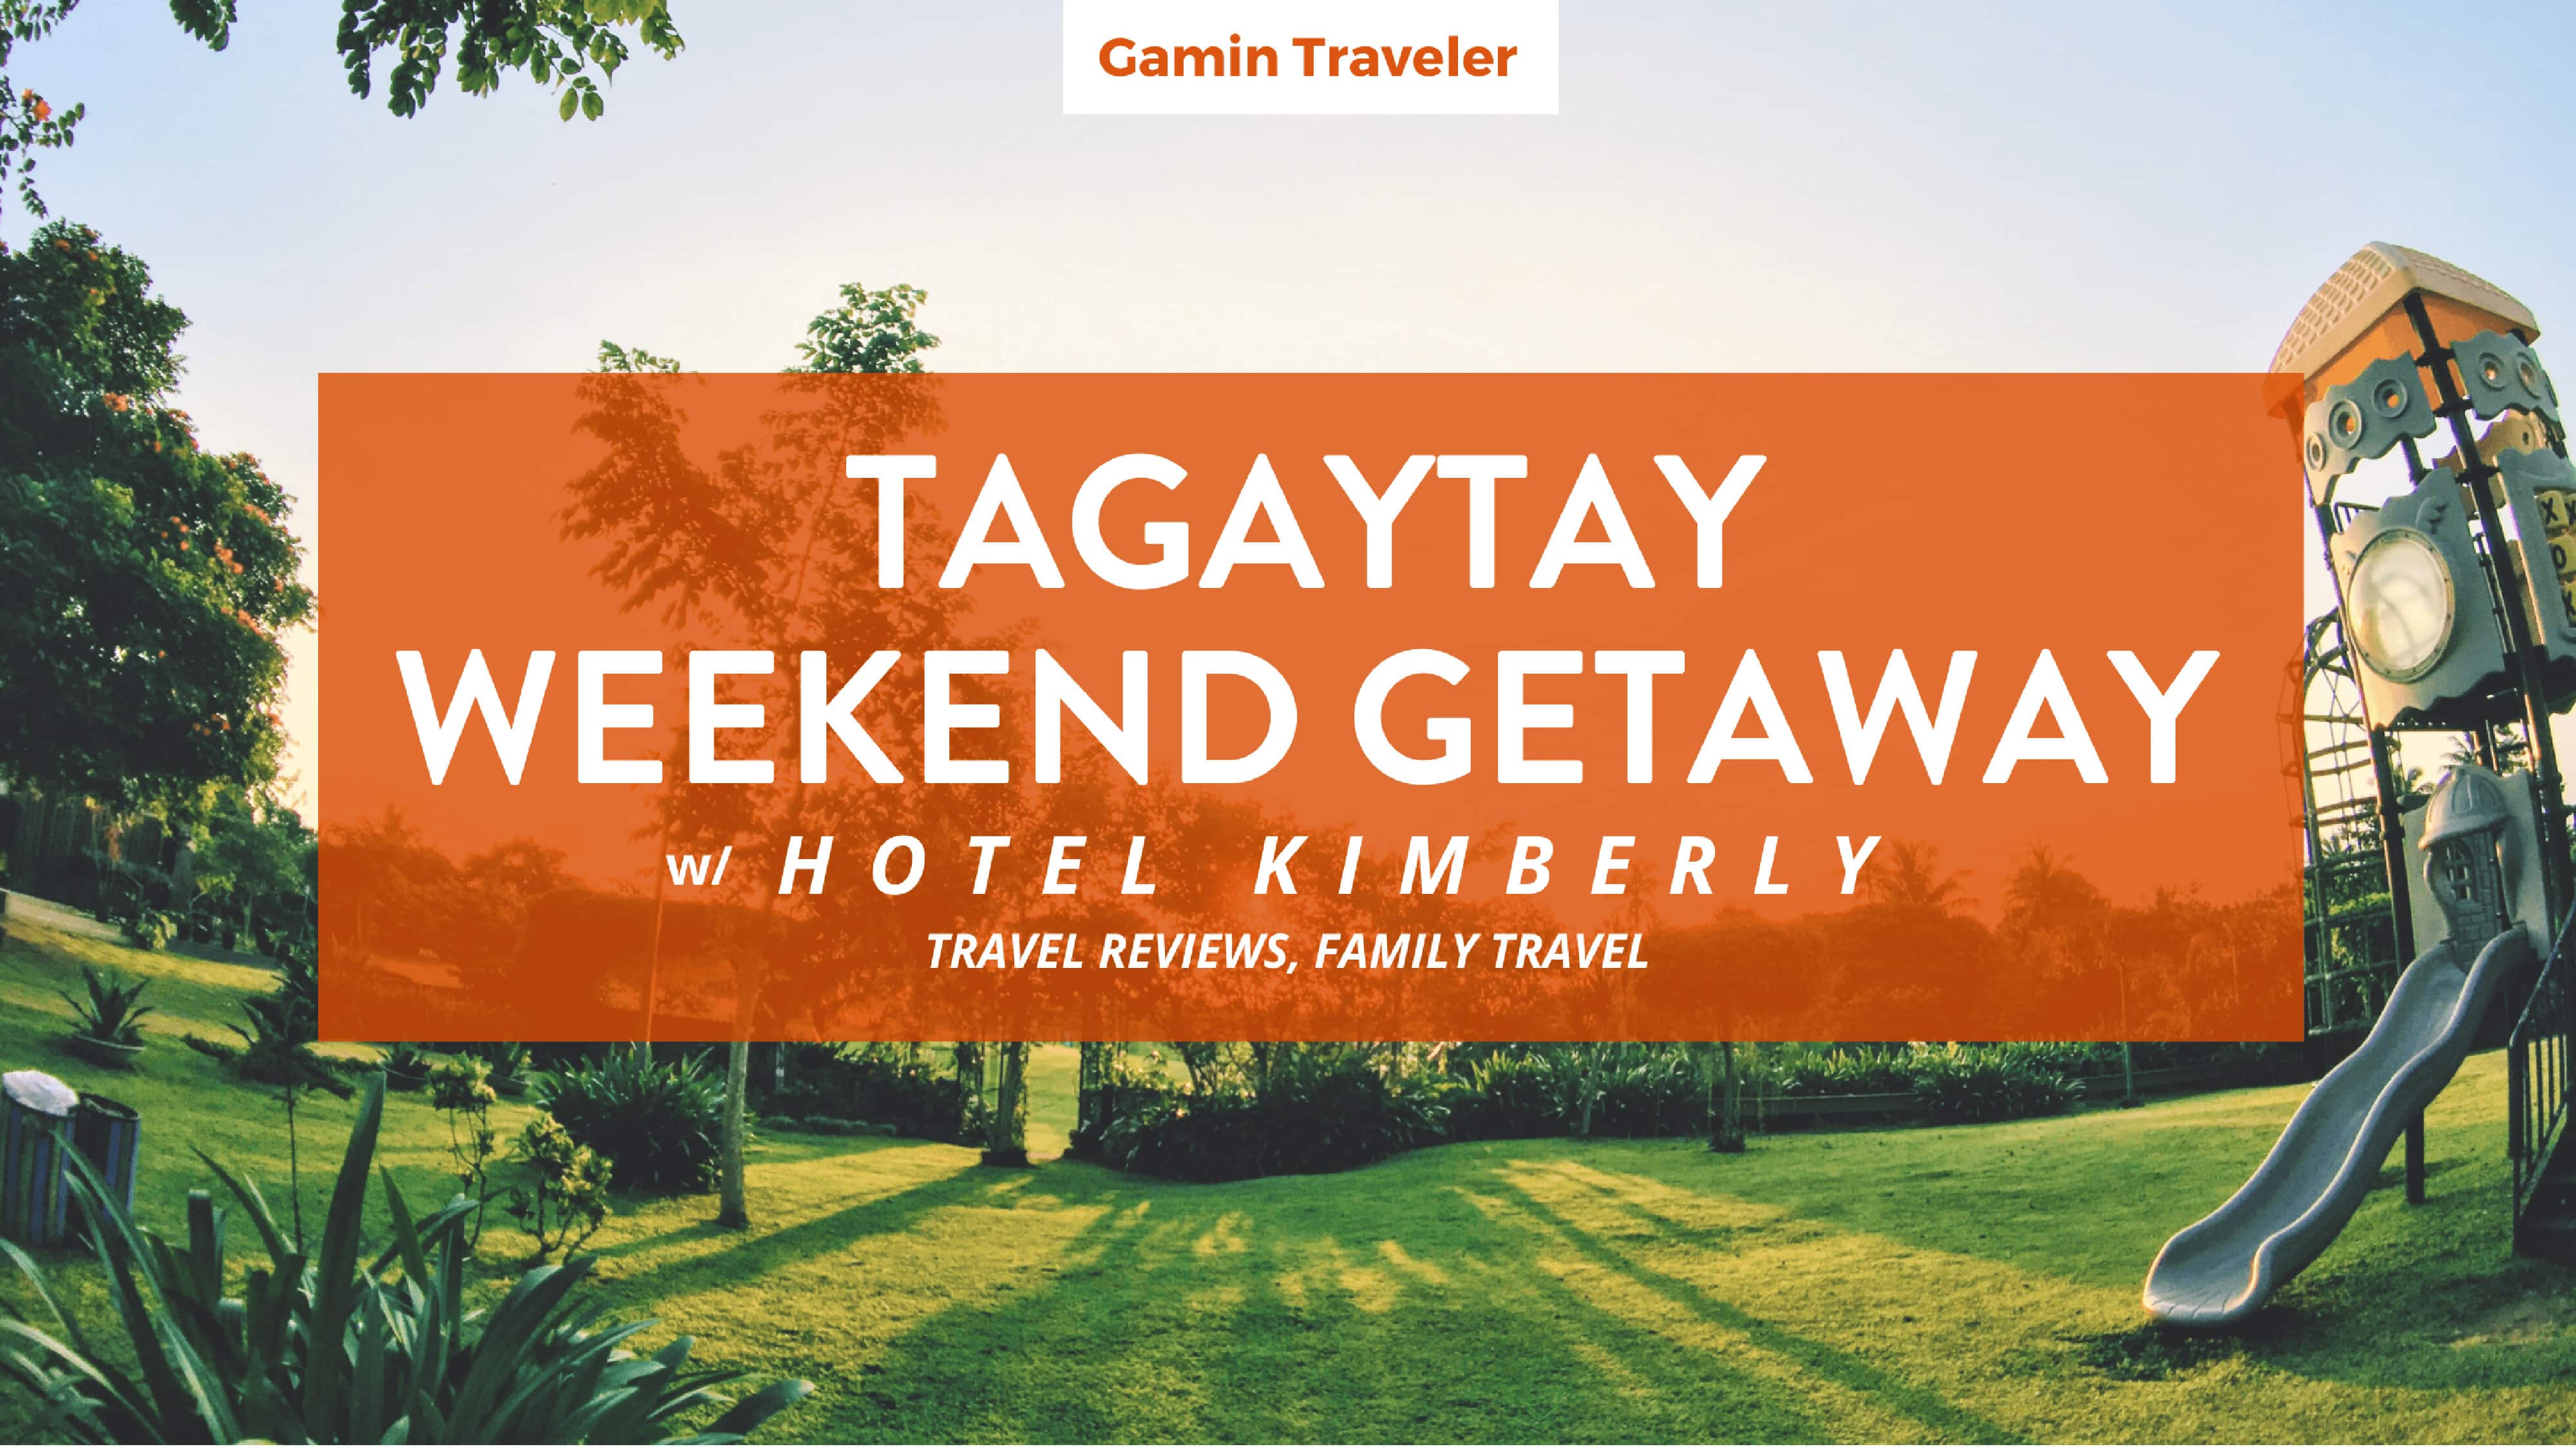 Hotel Kimberly Tagaytay: A precious family weekend